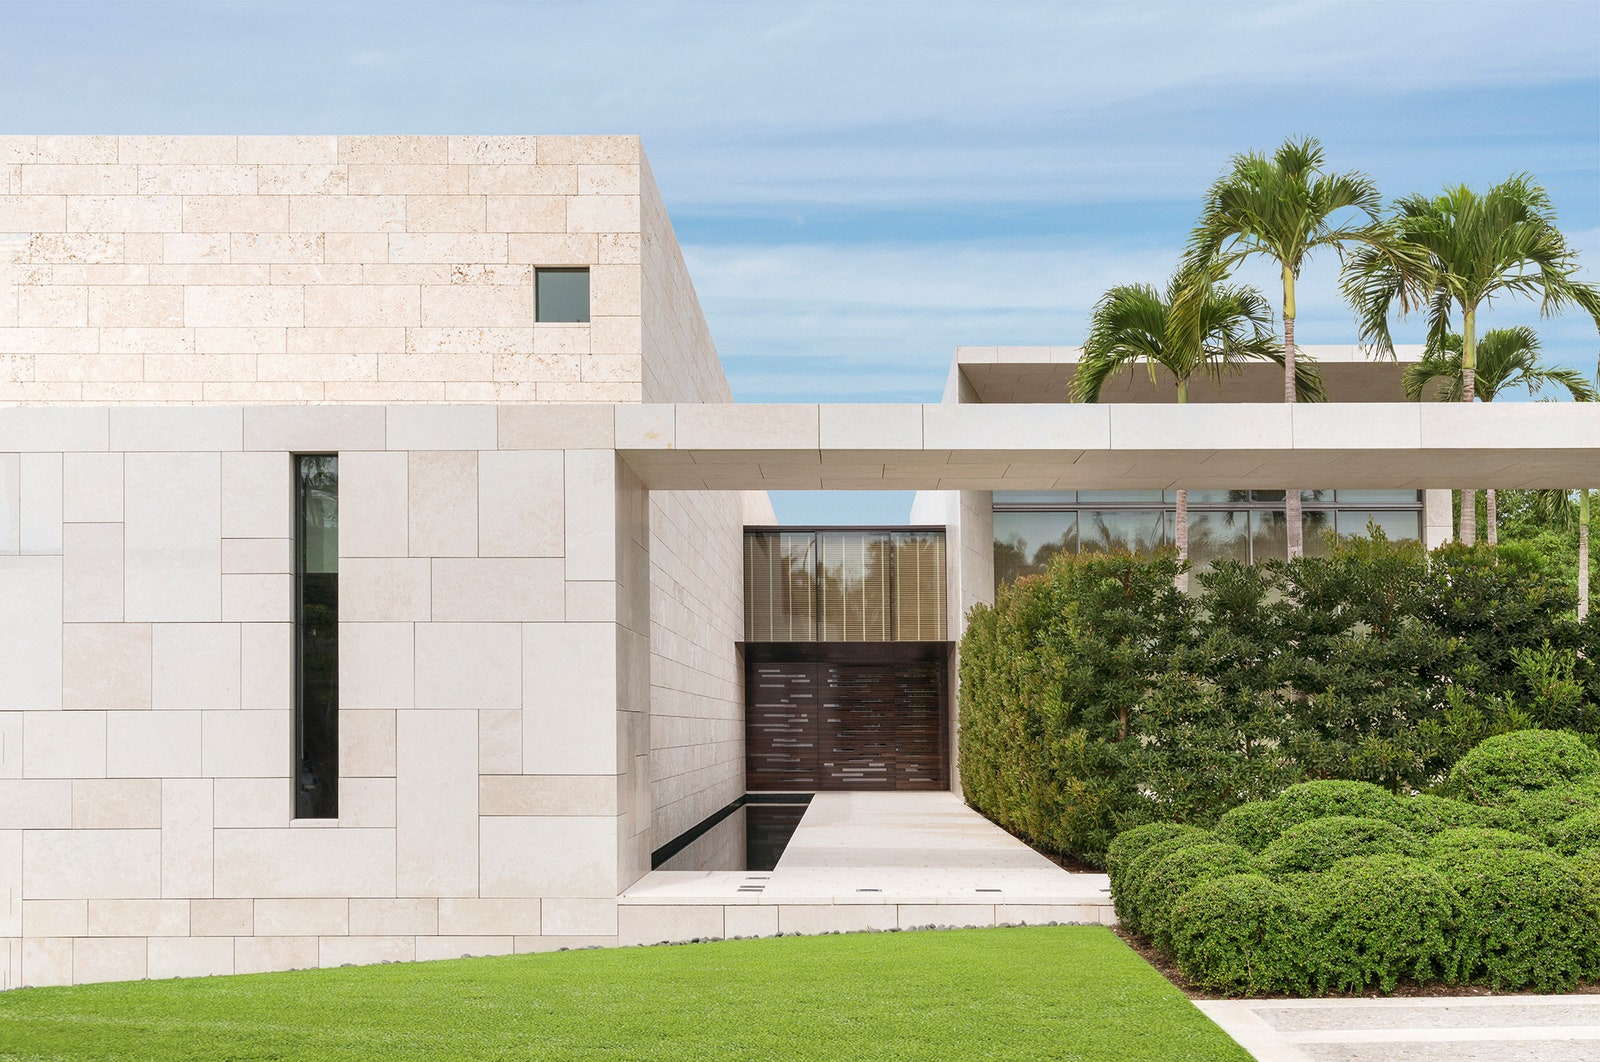 Дом по проекту Питера Марино состоит из двух прямоугольных блоков соеди­ненных галереей. Они построены из известняка а...